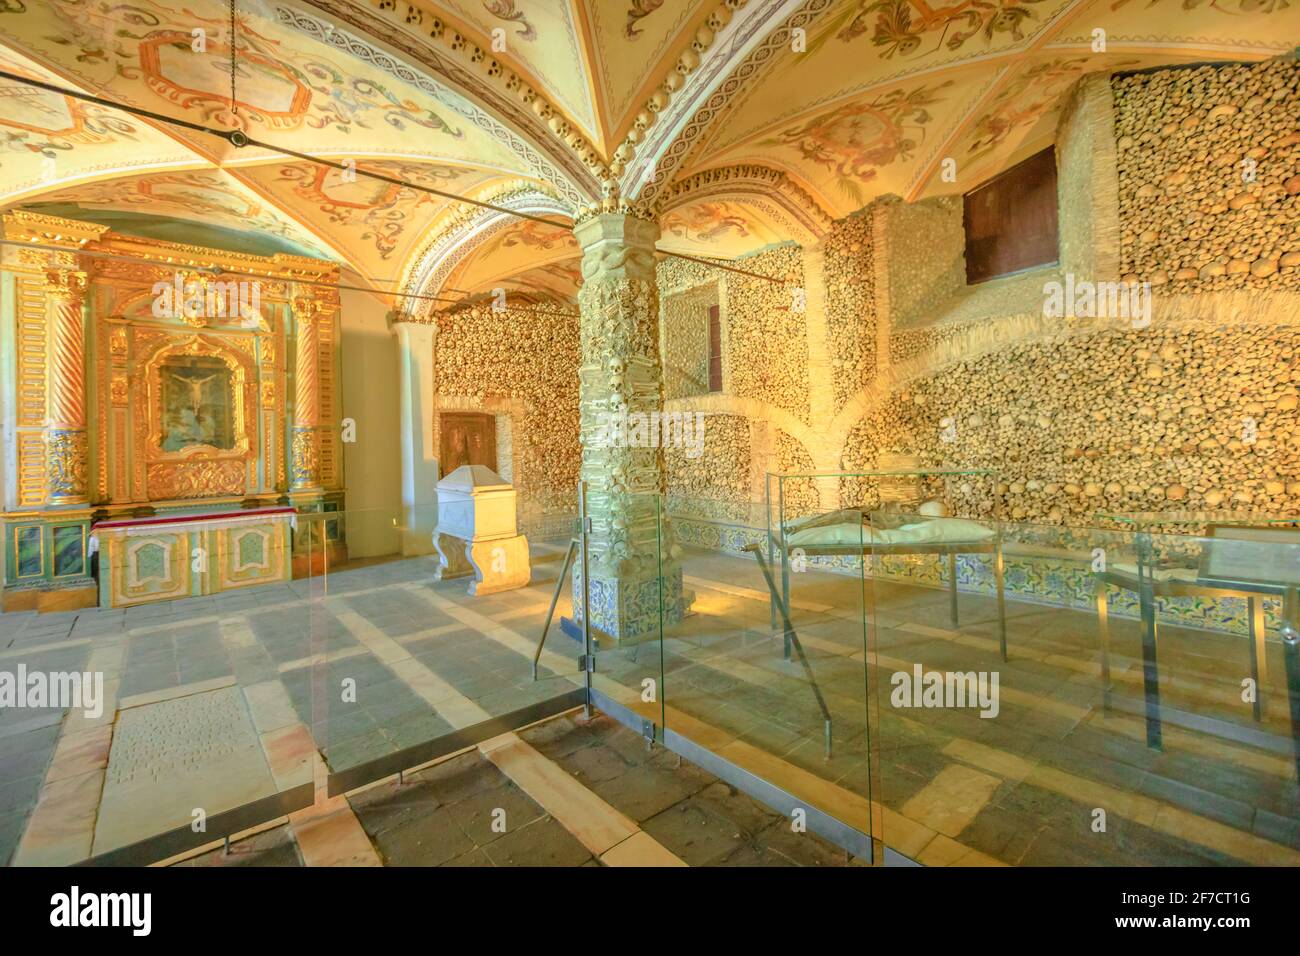 Evora, Portugal - 18. August 2017: Das Innere der Bones Chapel, die sich in der Kirche von Sao Francisco de Assis befindet, eines der meistbesuchten Denkmäler von Stockfoto